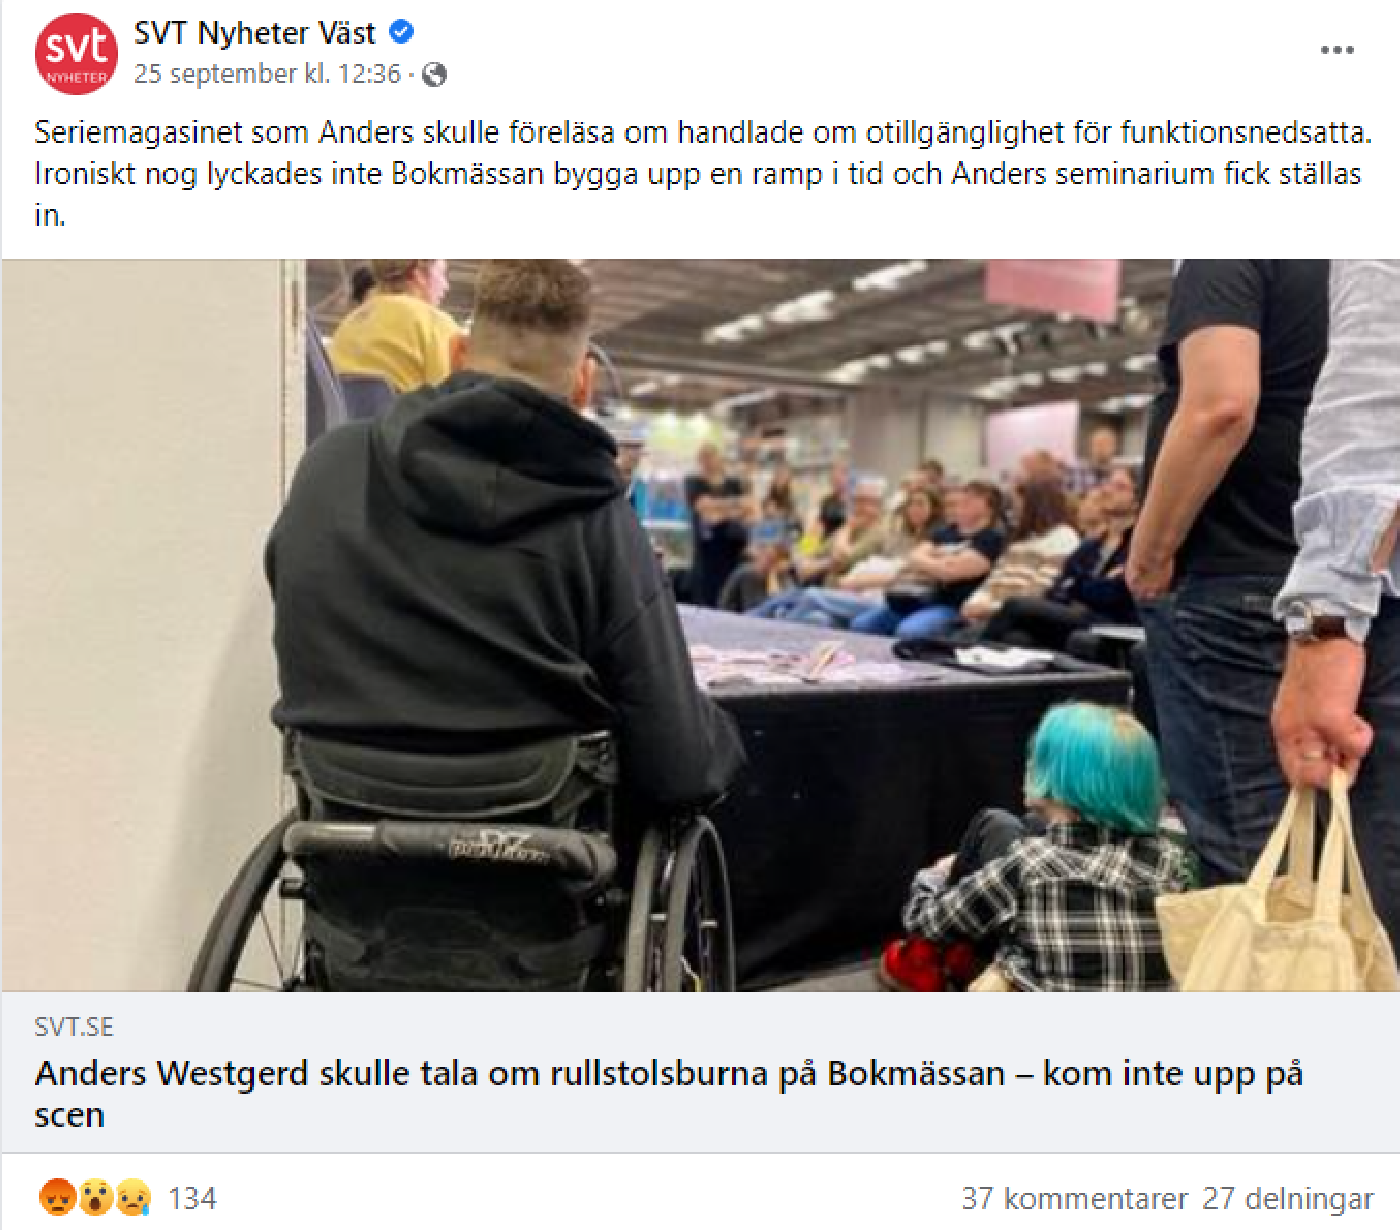 Skärmdump från SVT NYheter Väst på Facebook, nyheten om rampen och Anders visas.